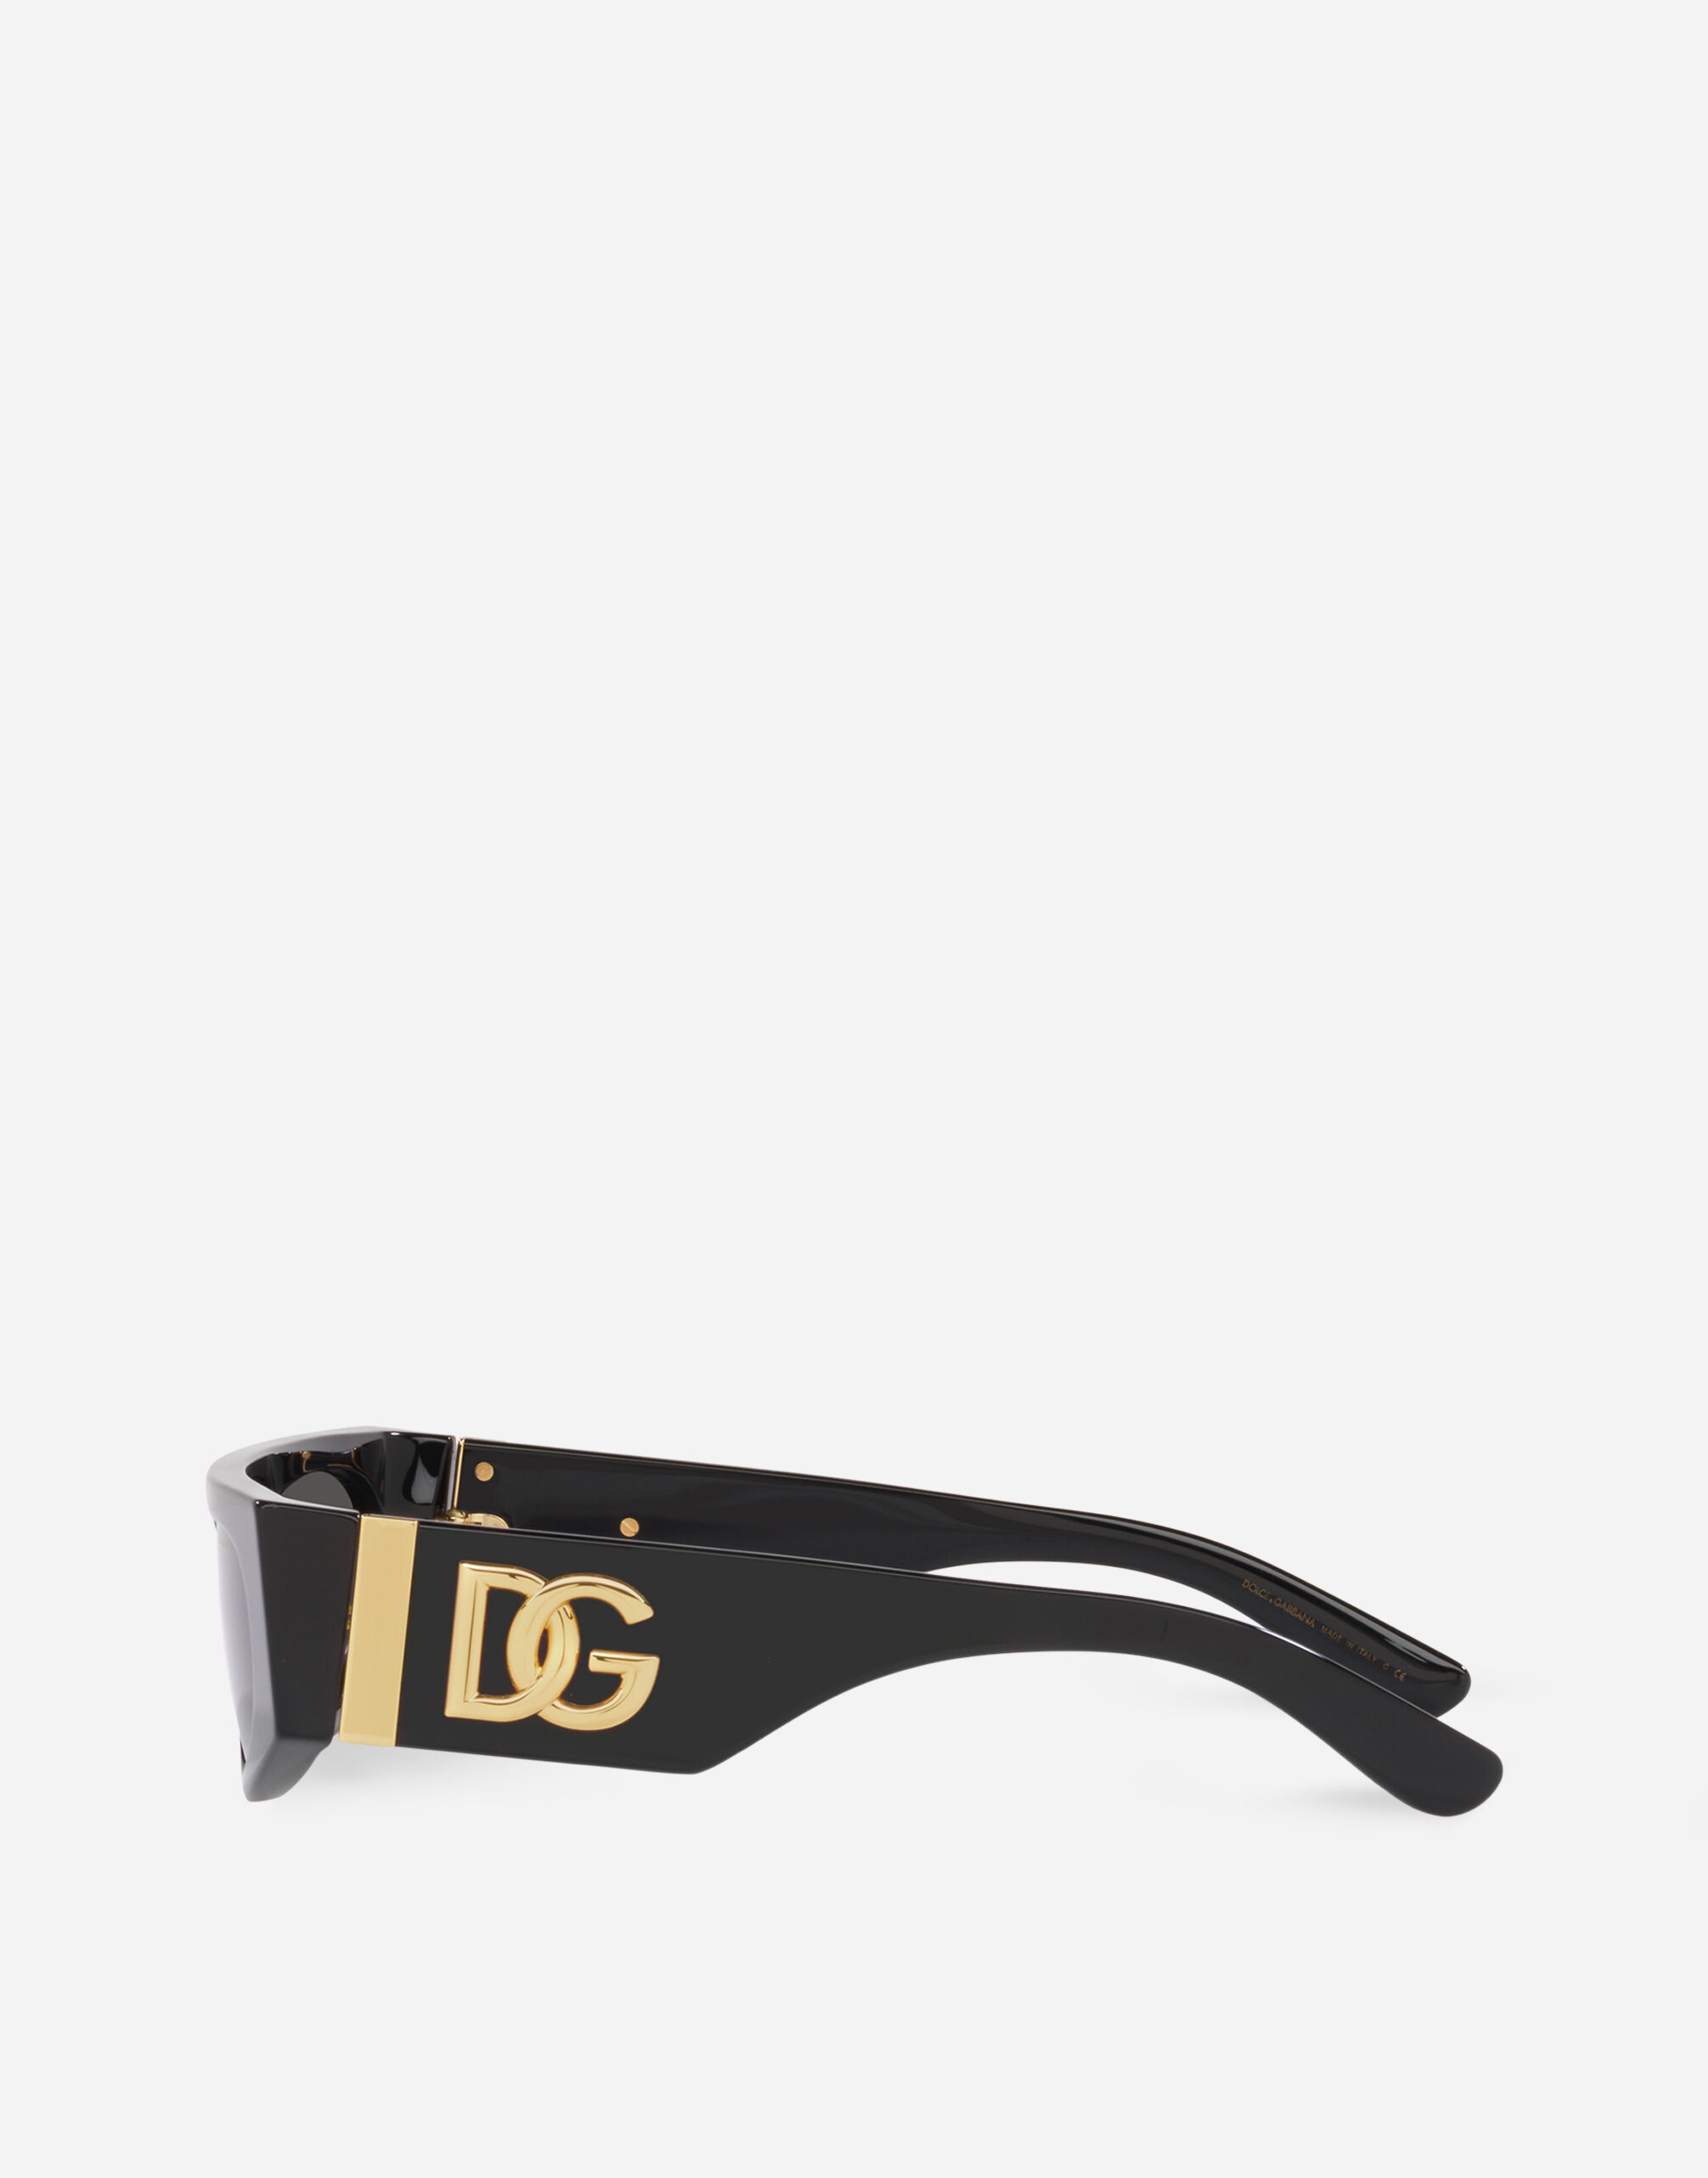 DG Crossed Sunglasses - 3